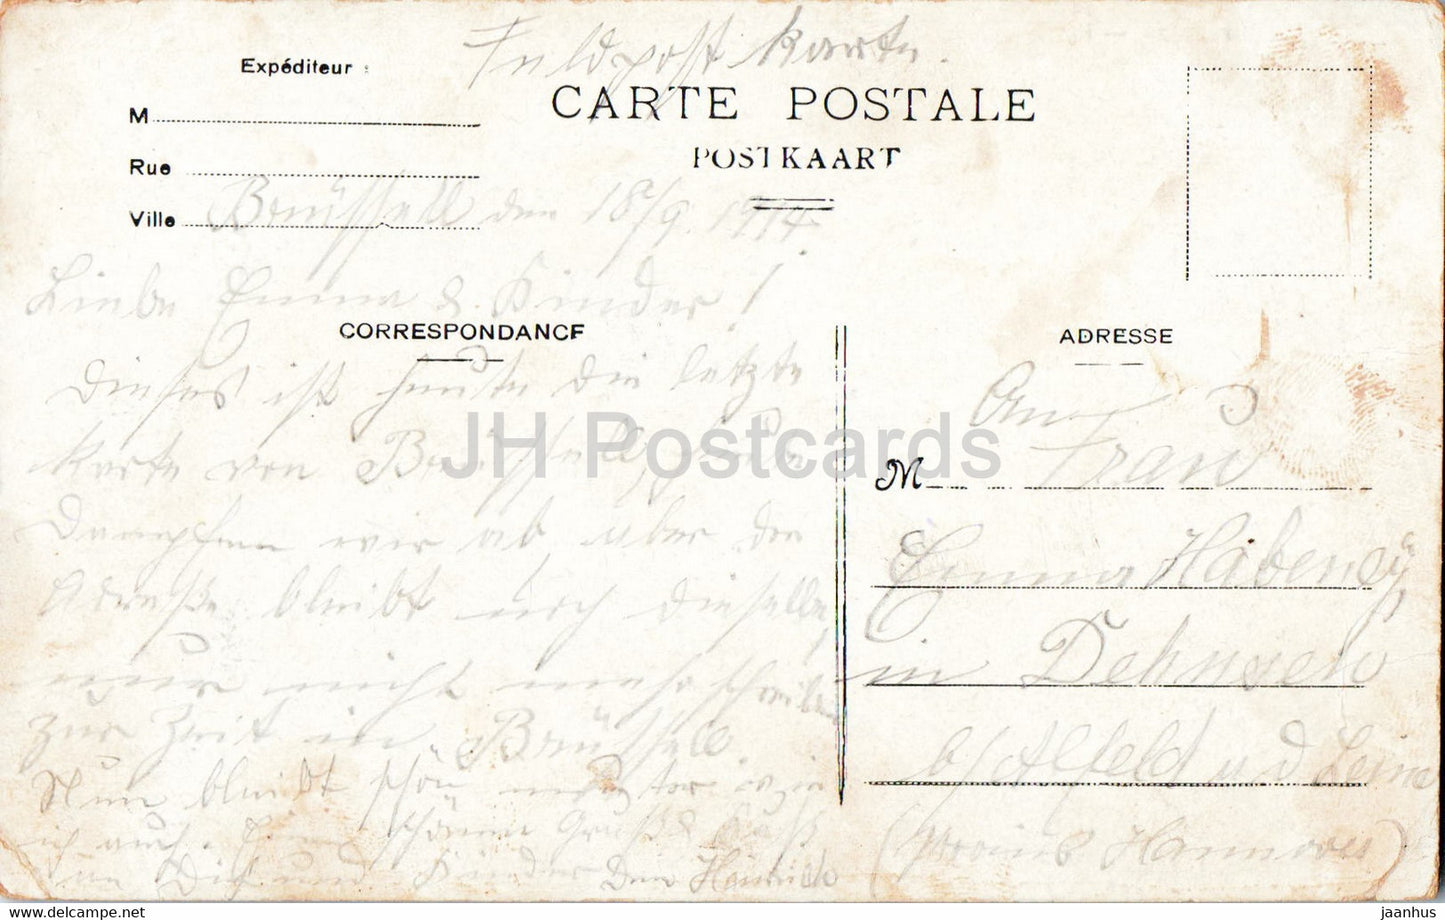 Bruxelles - Bruxelles - Palais de Justice - carte postale ancienne - 1917 - Belgique - occasion